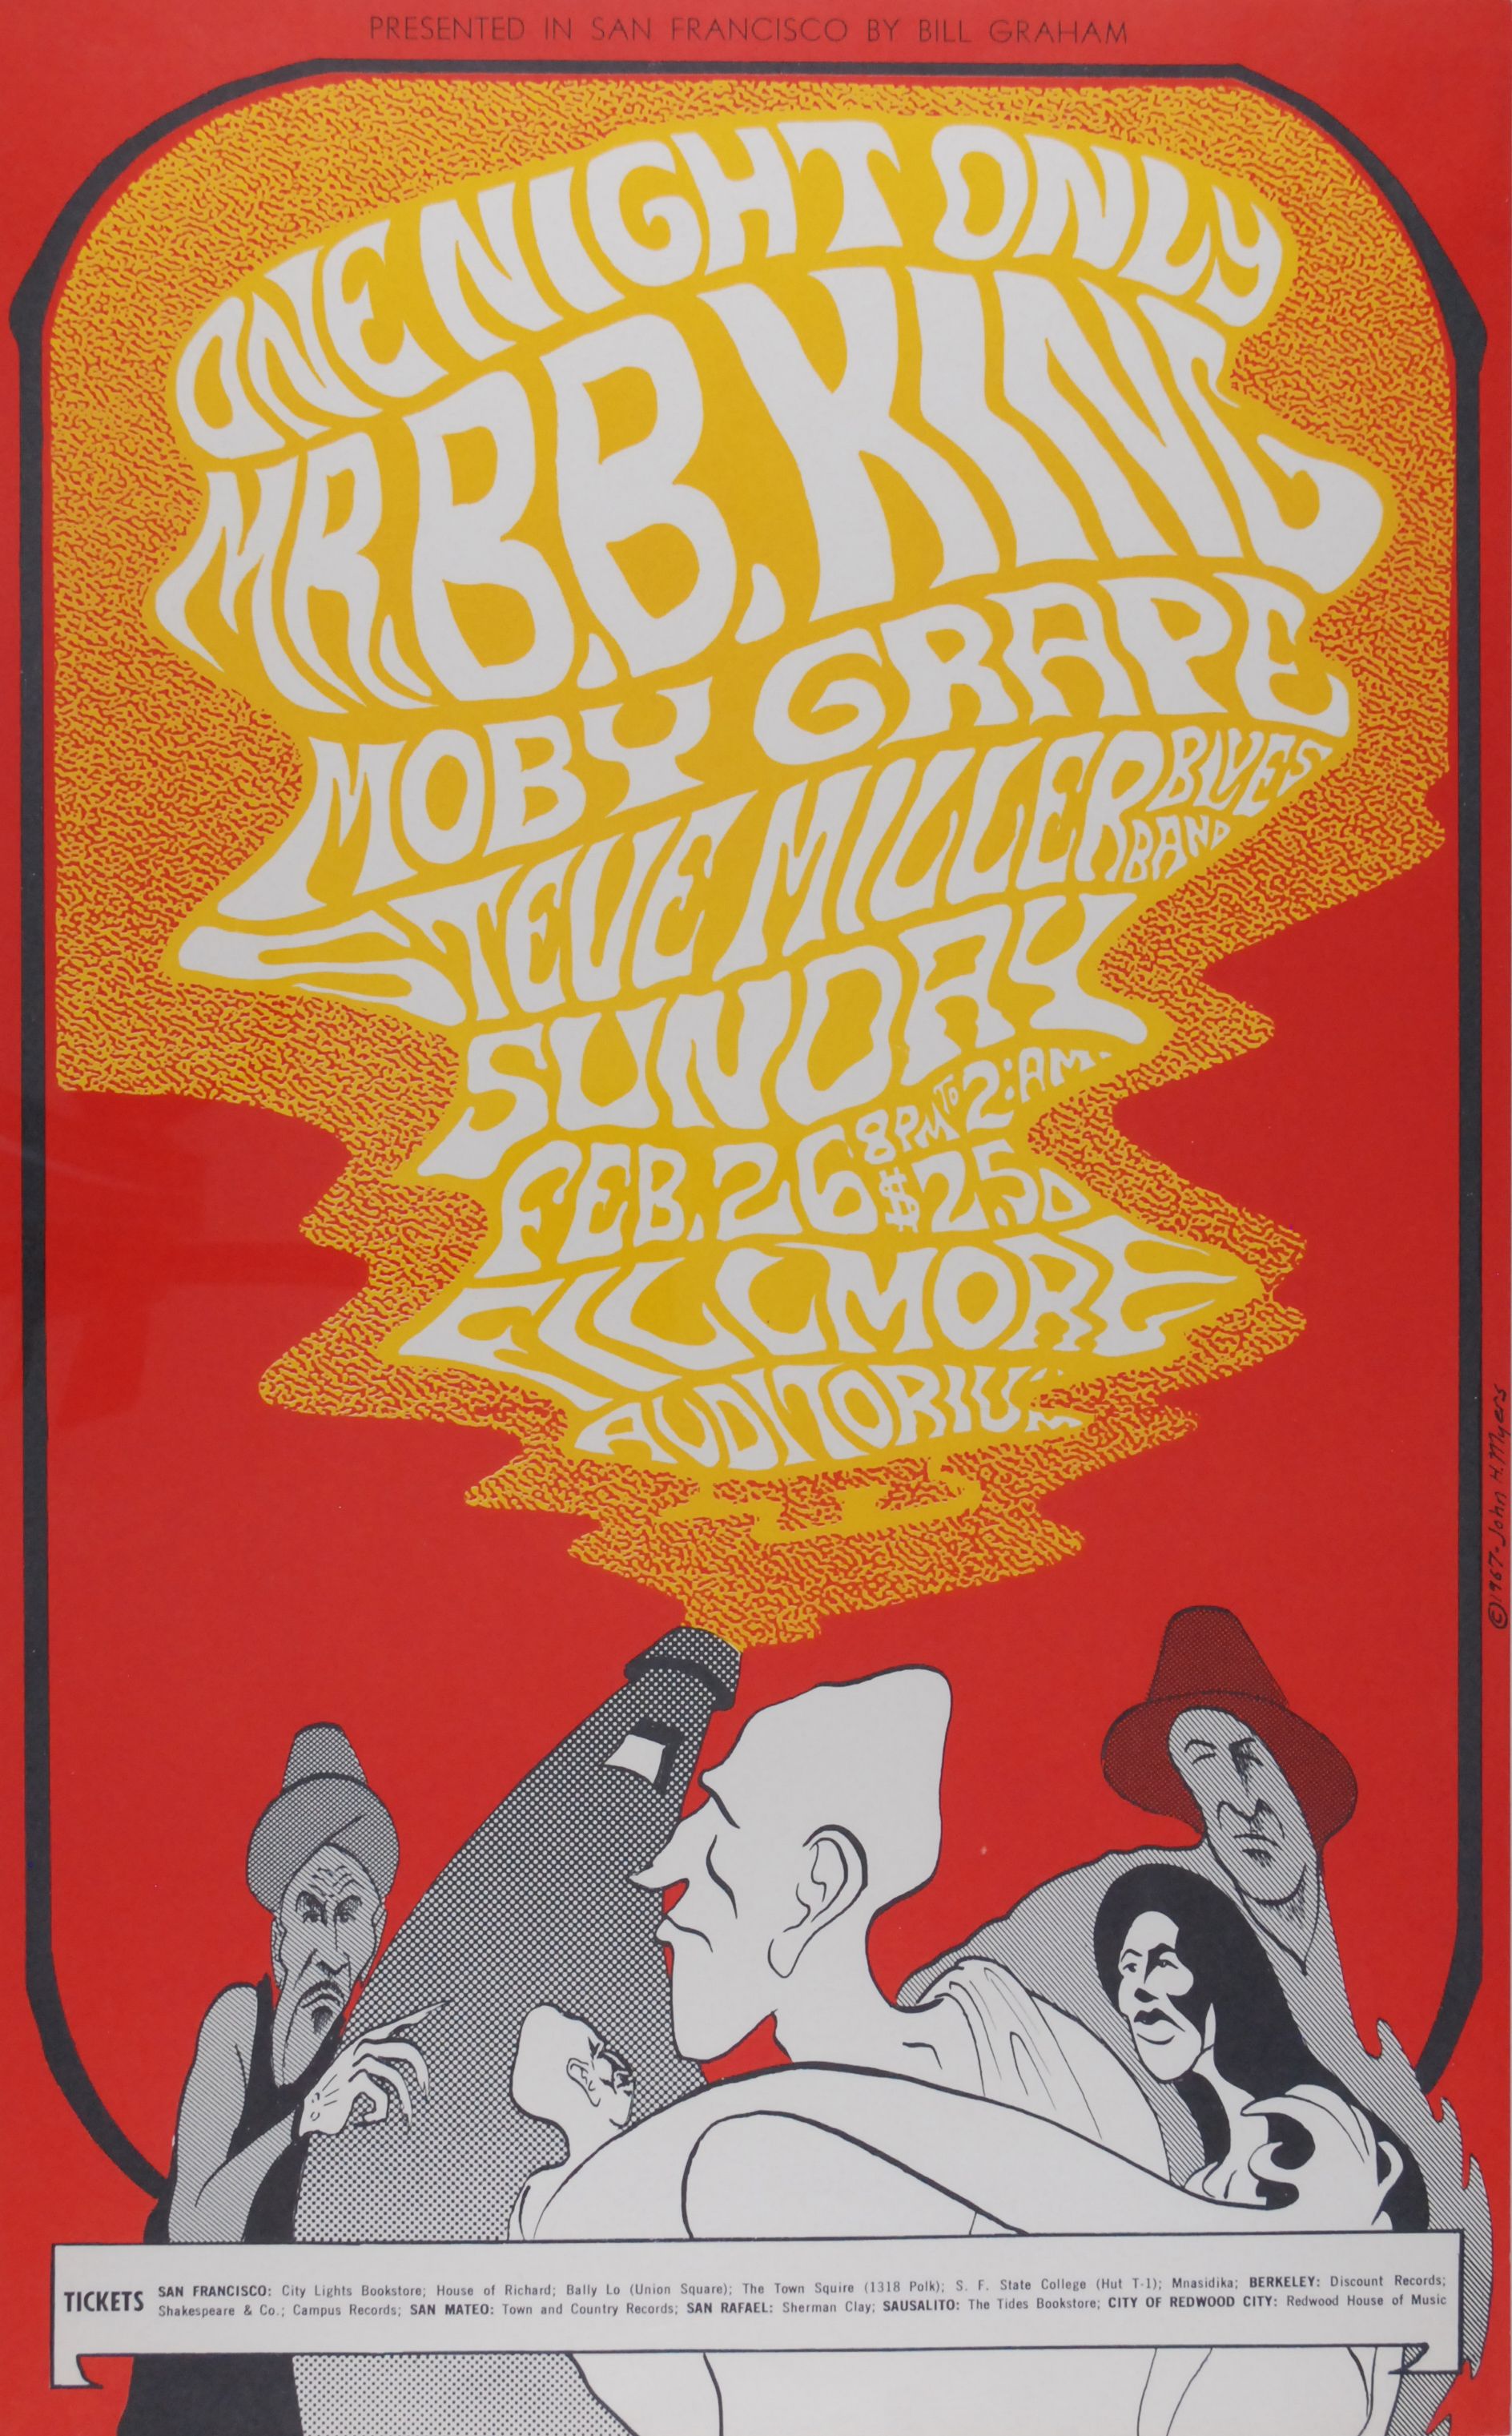 BG-52-OP-1 Concert Poster